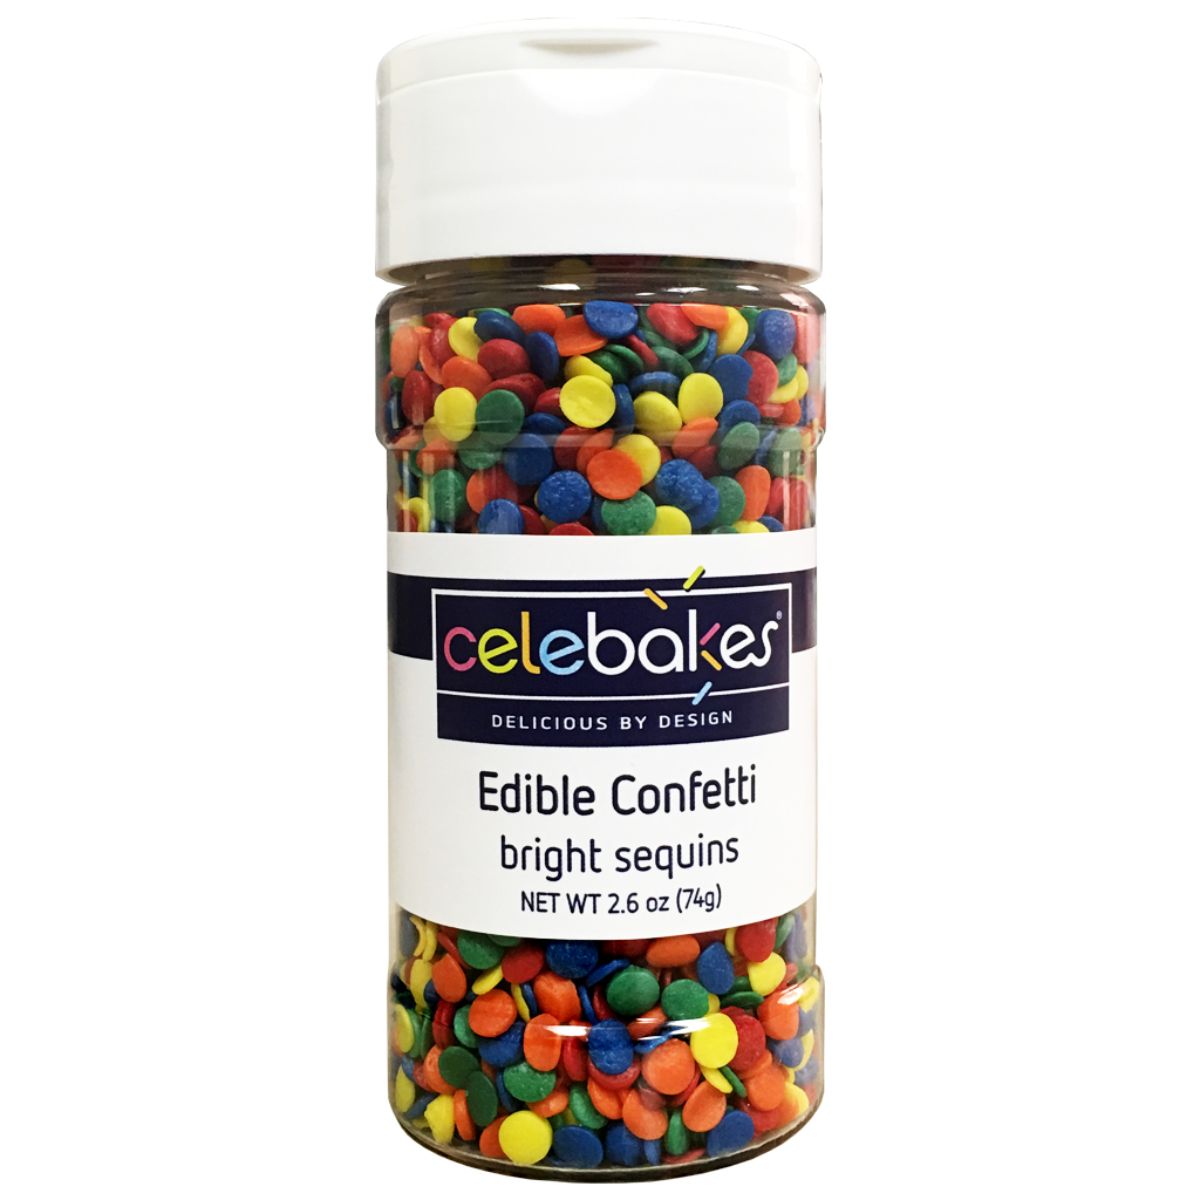 CK Edible Confetti Bright Sequins 2.6oz